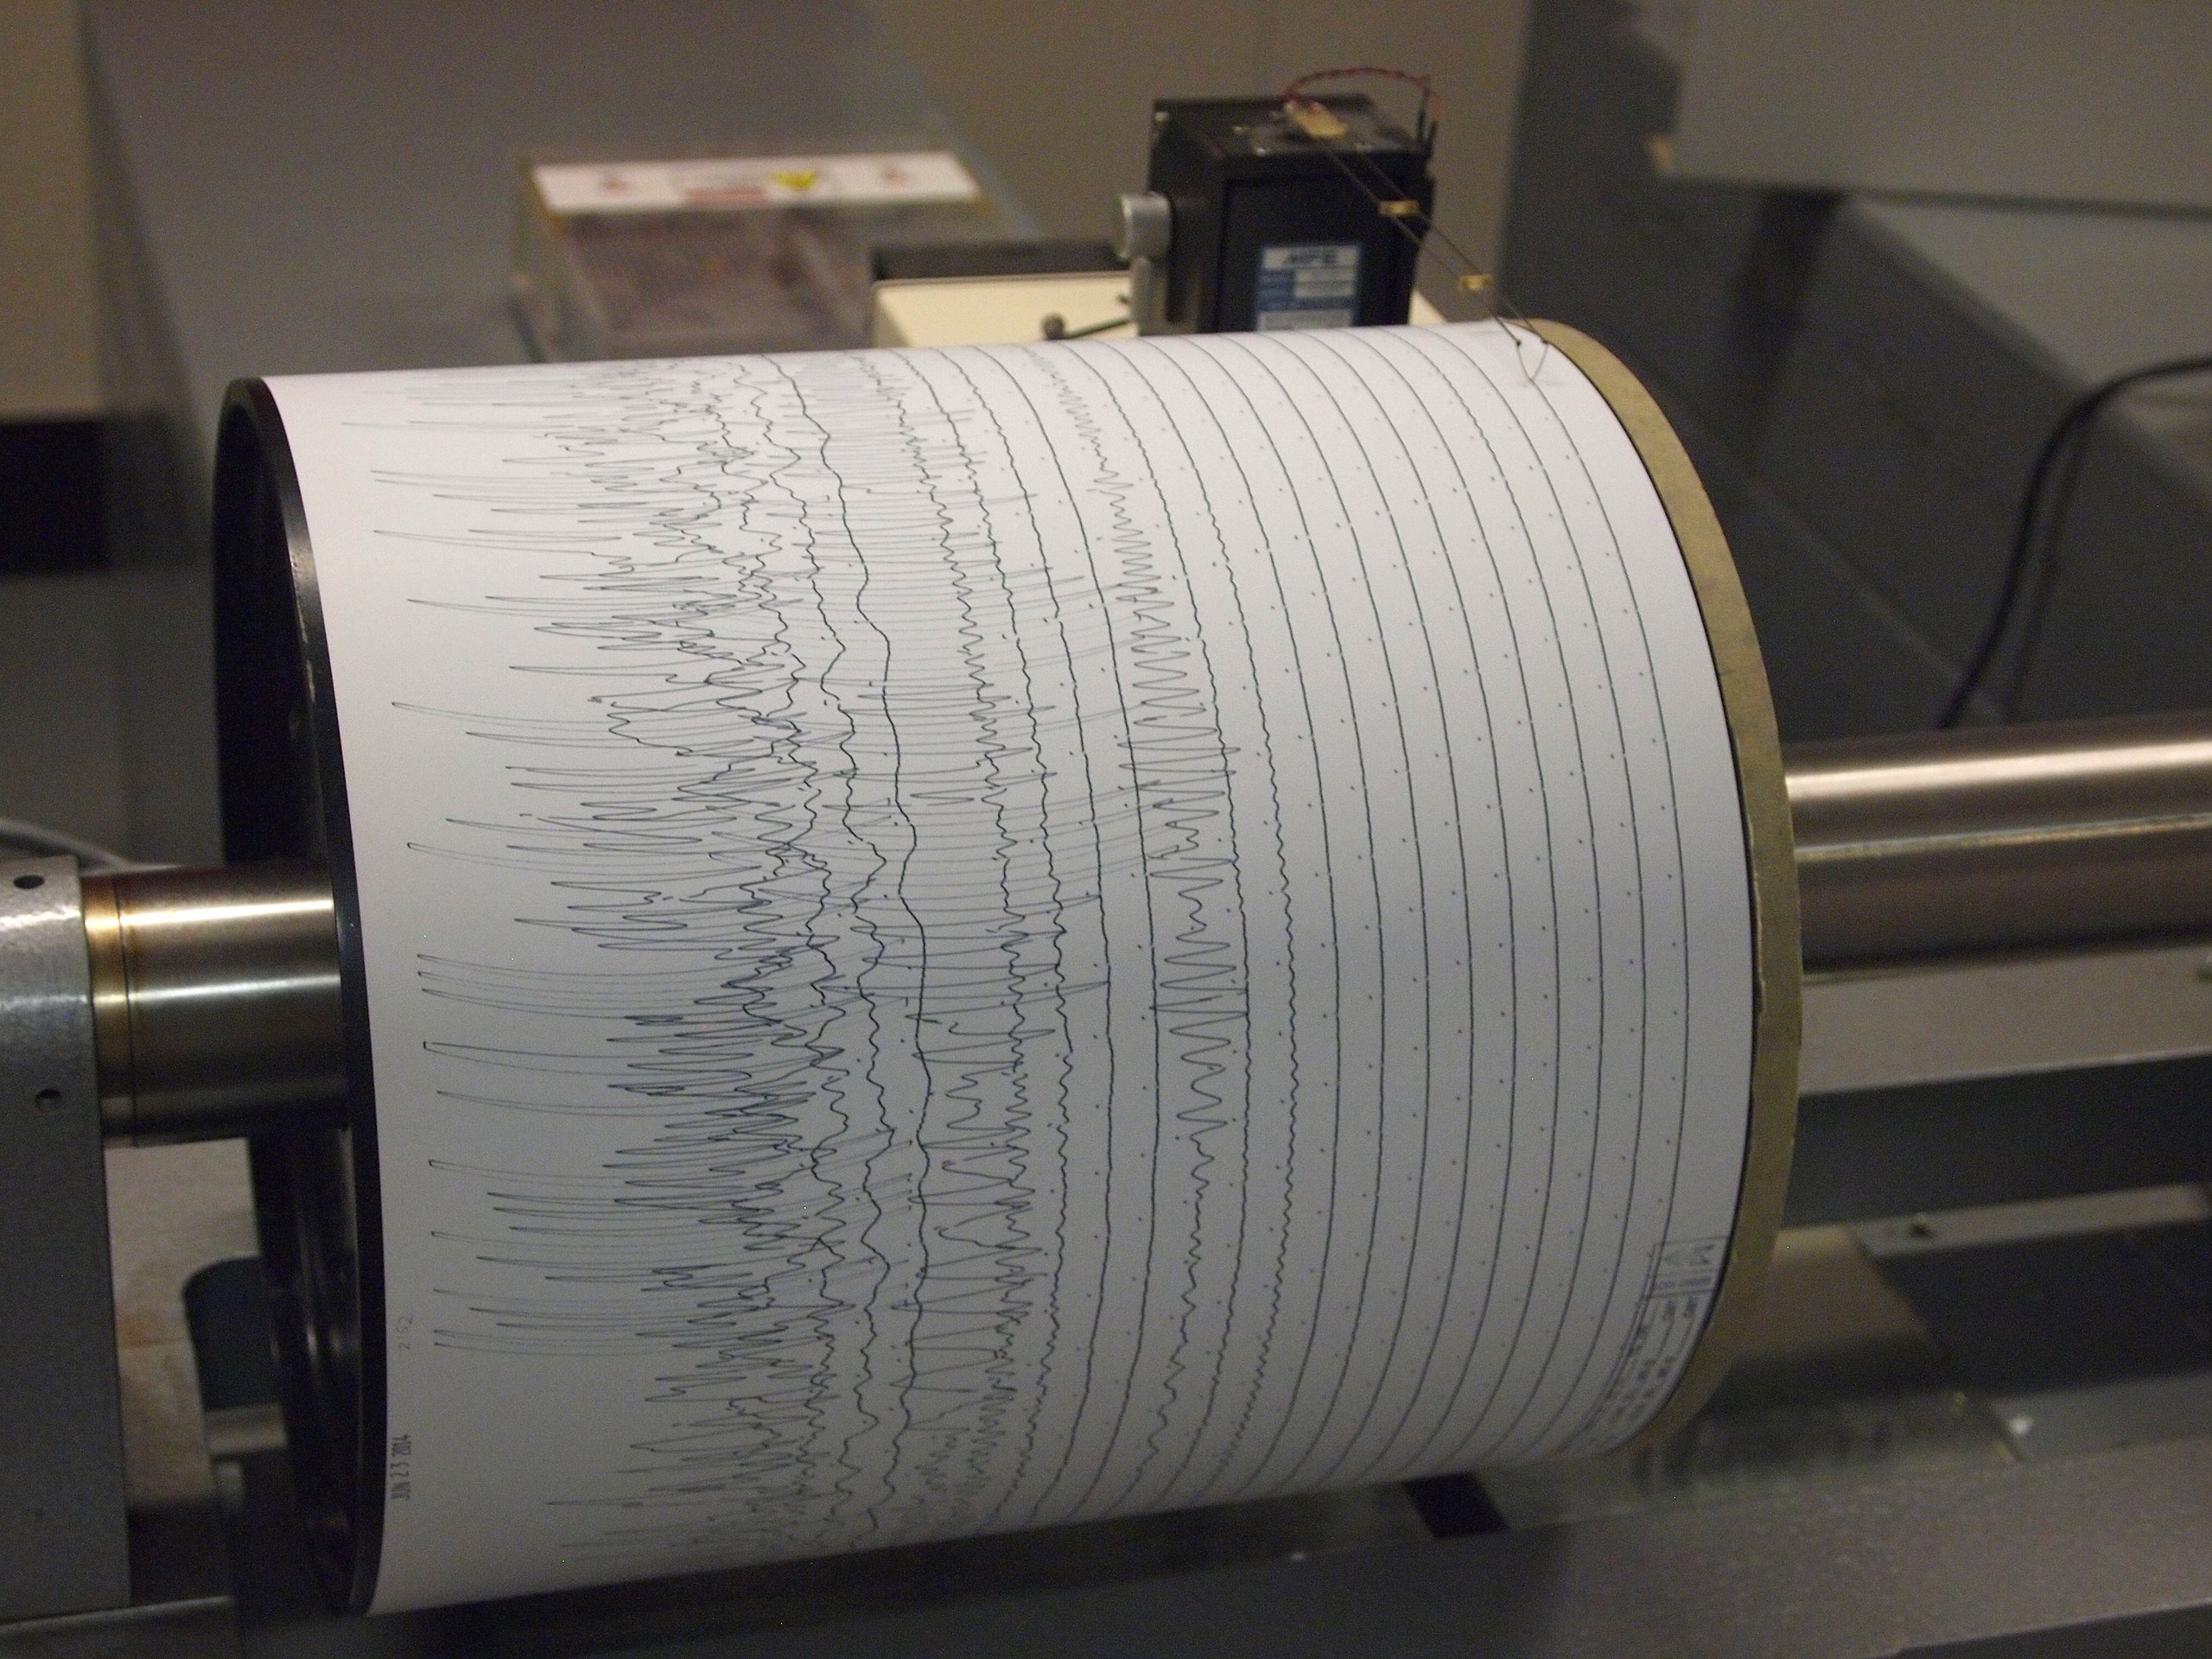 Papierrolle mit aufgezeichnetem Seismogramm